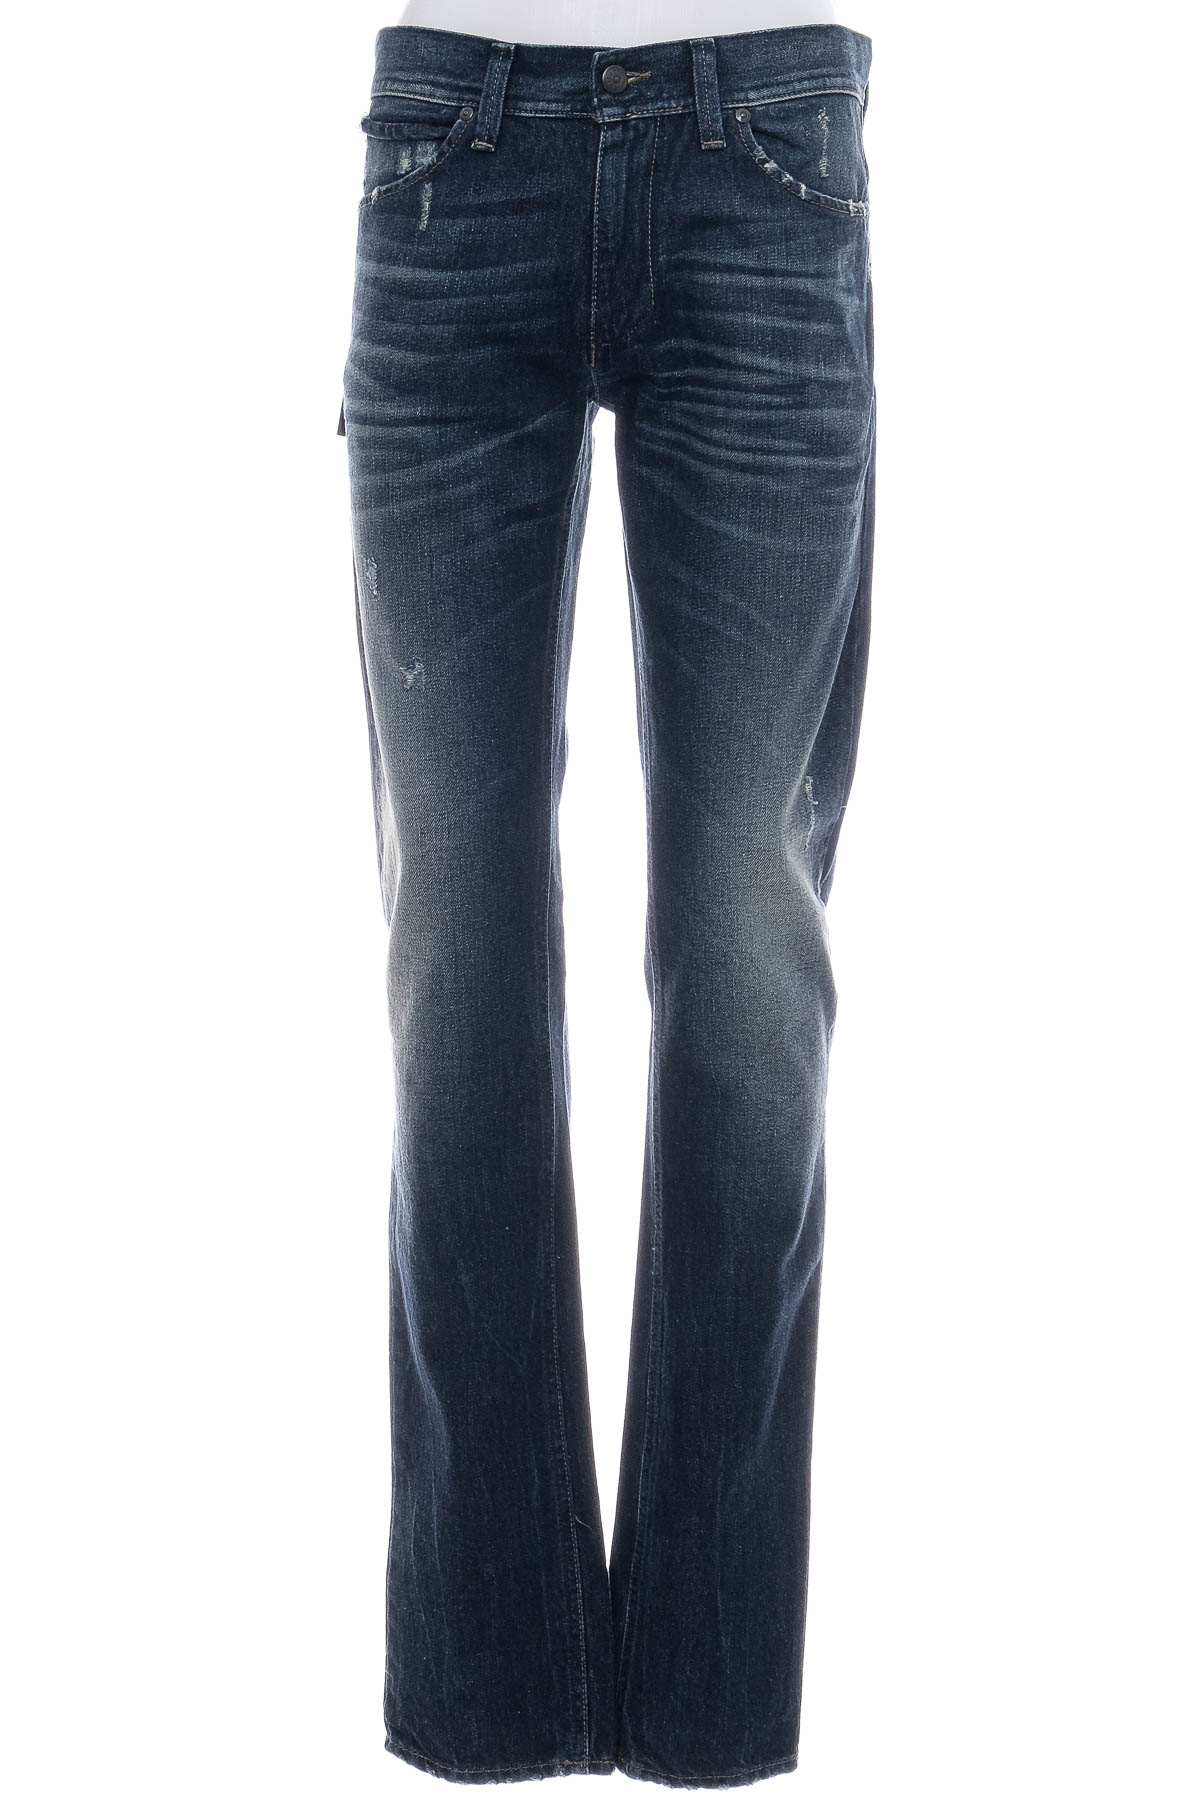 Jeans pentru bărbăți - Sisley - 0